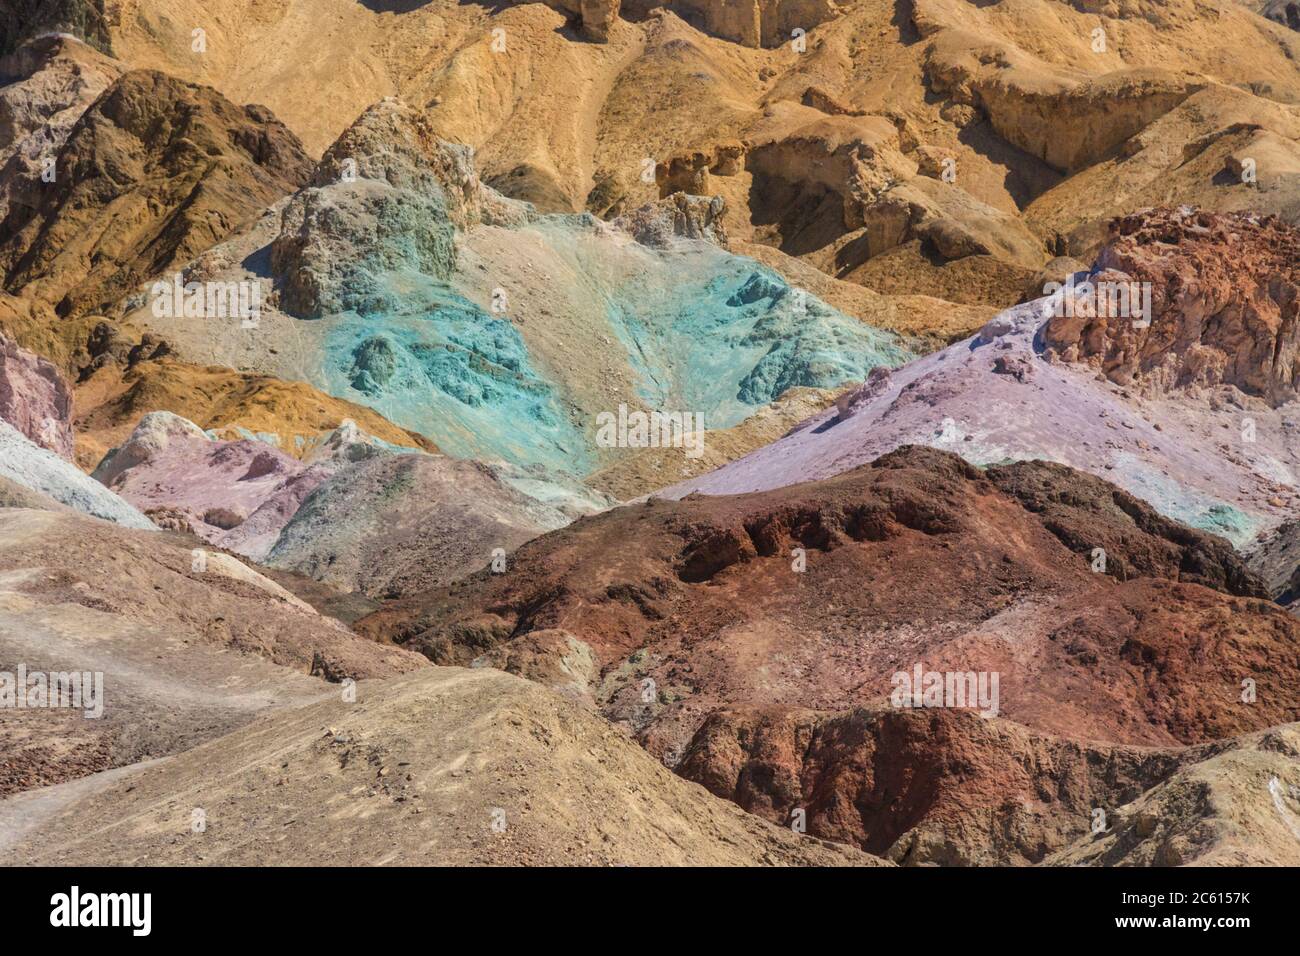 Artistes Palette, formations de minéraux colorées, Artists Drive, Parc national de la Vallée de la mort, Californie, États-Unis Banque D'Images